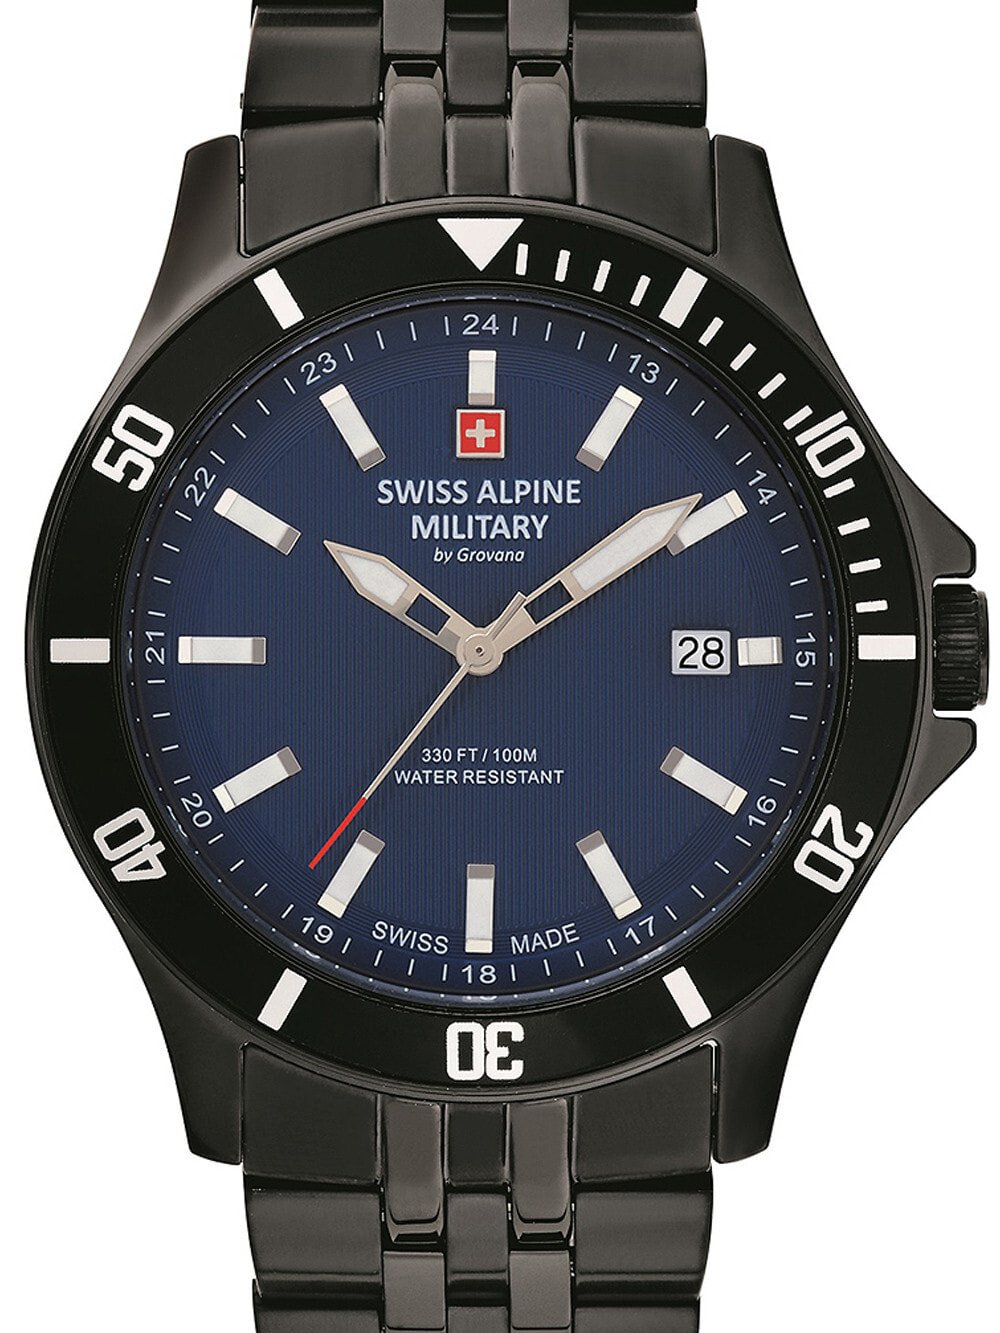 Мужские наручные часы с черным браслетом Swiss Alpine Military 7022.1175 mens 42mm 10ATM